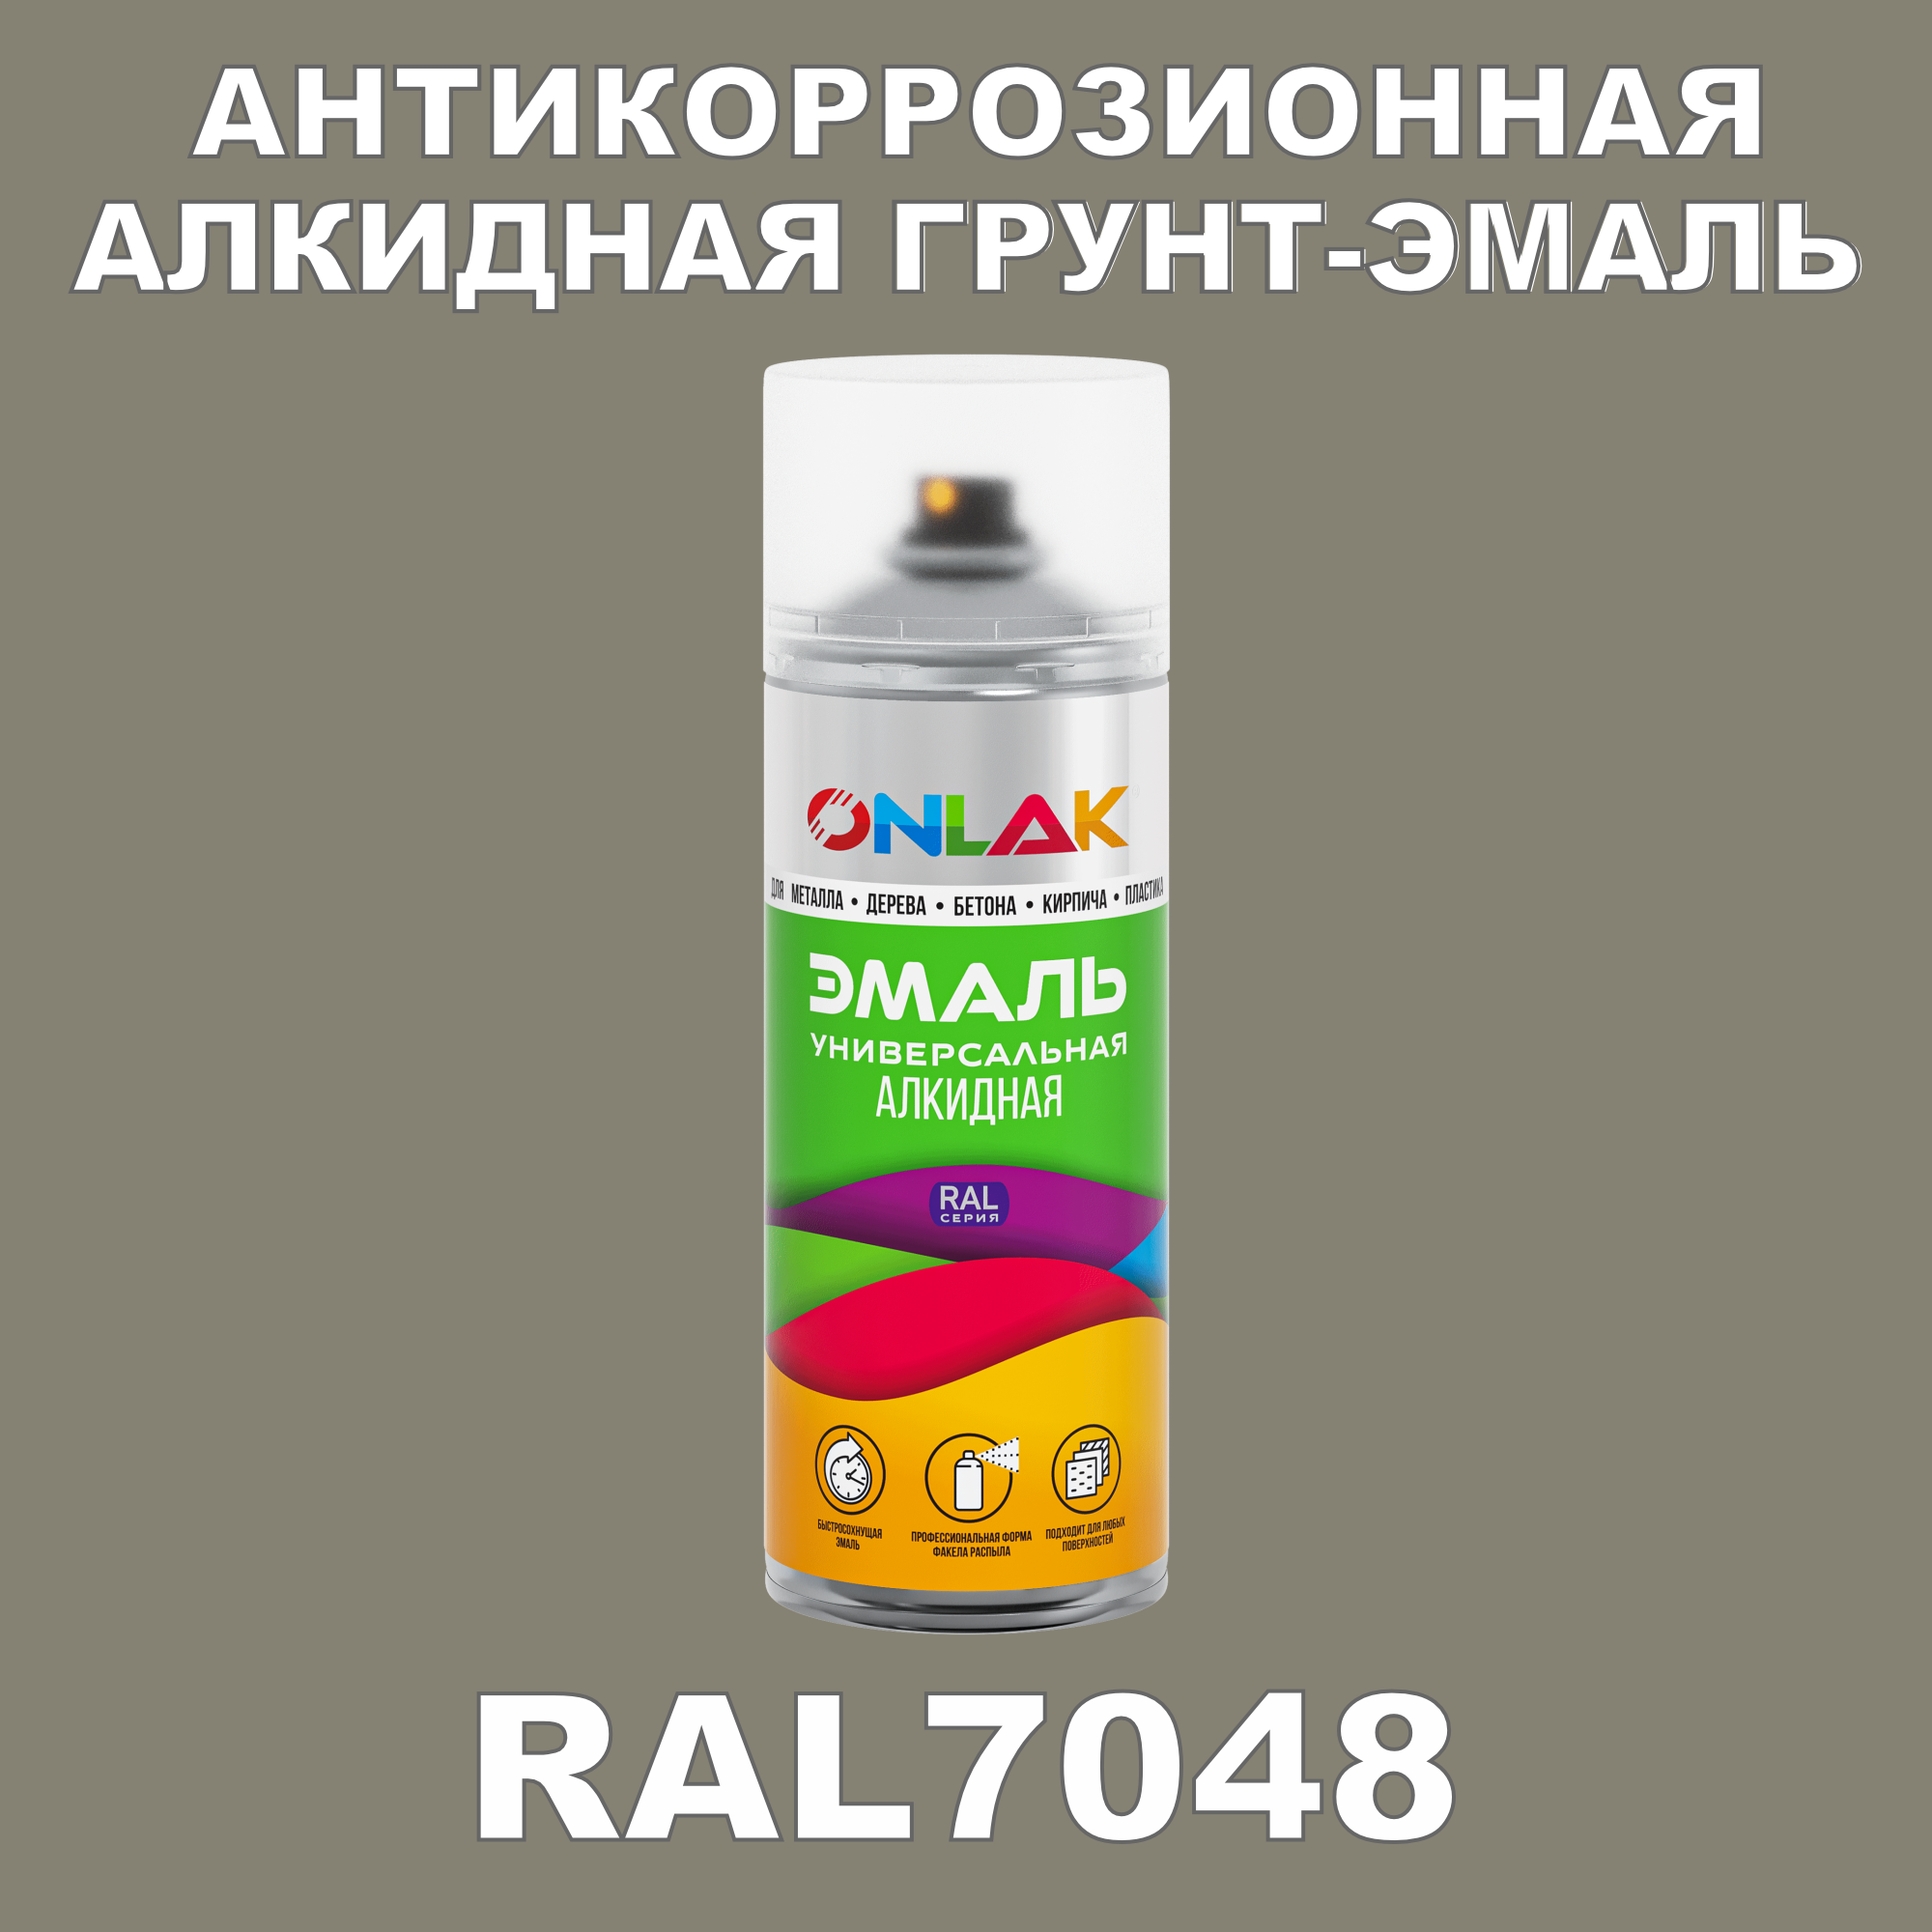 Антикоррозионная грунт-эмаль ONLAK RAL7048 полуматовая для металла и защиты от ржавчины